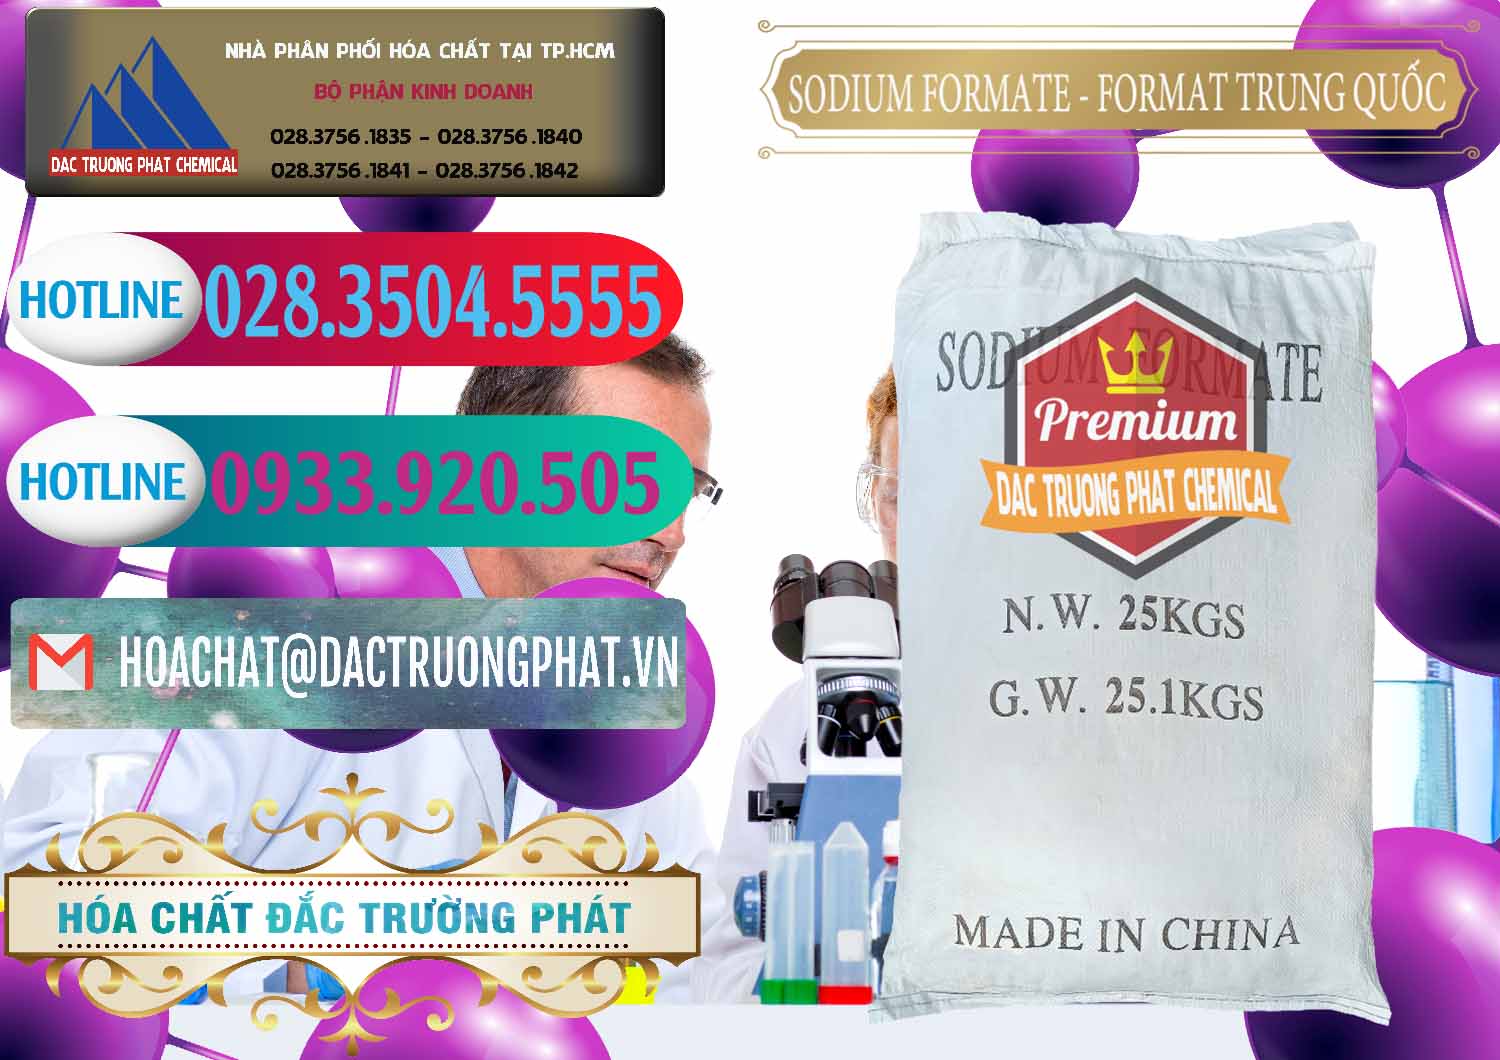 Nơi chuyên bán - cung ứng Sodium Formate - Natri Format Trung Quốc China - 0142 - Kinh doanh và cung cấp hóa chất tại TP.HCM - truongphat.vn